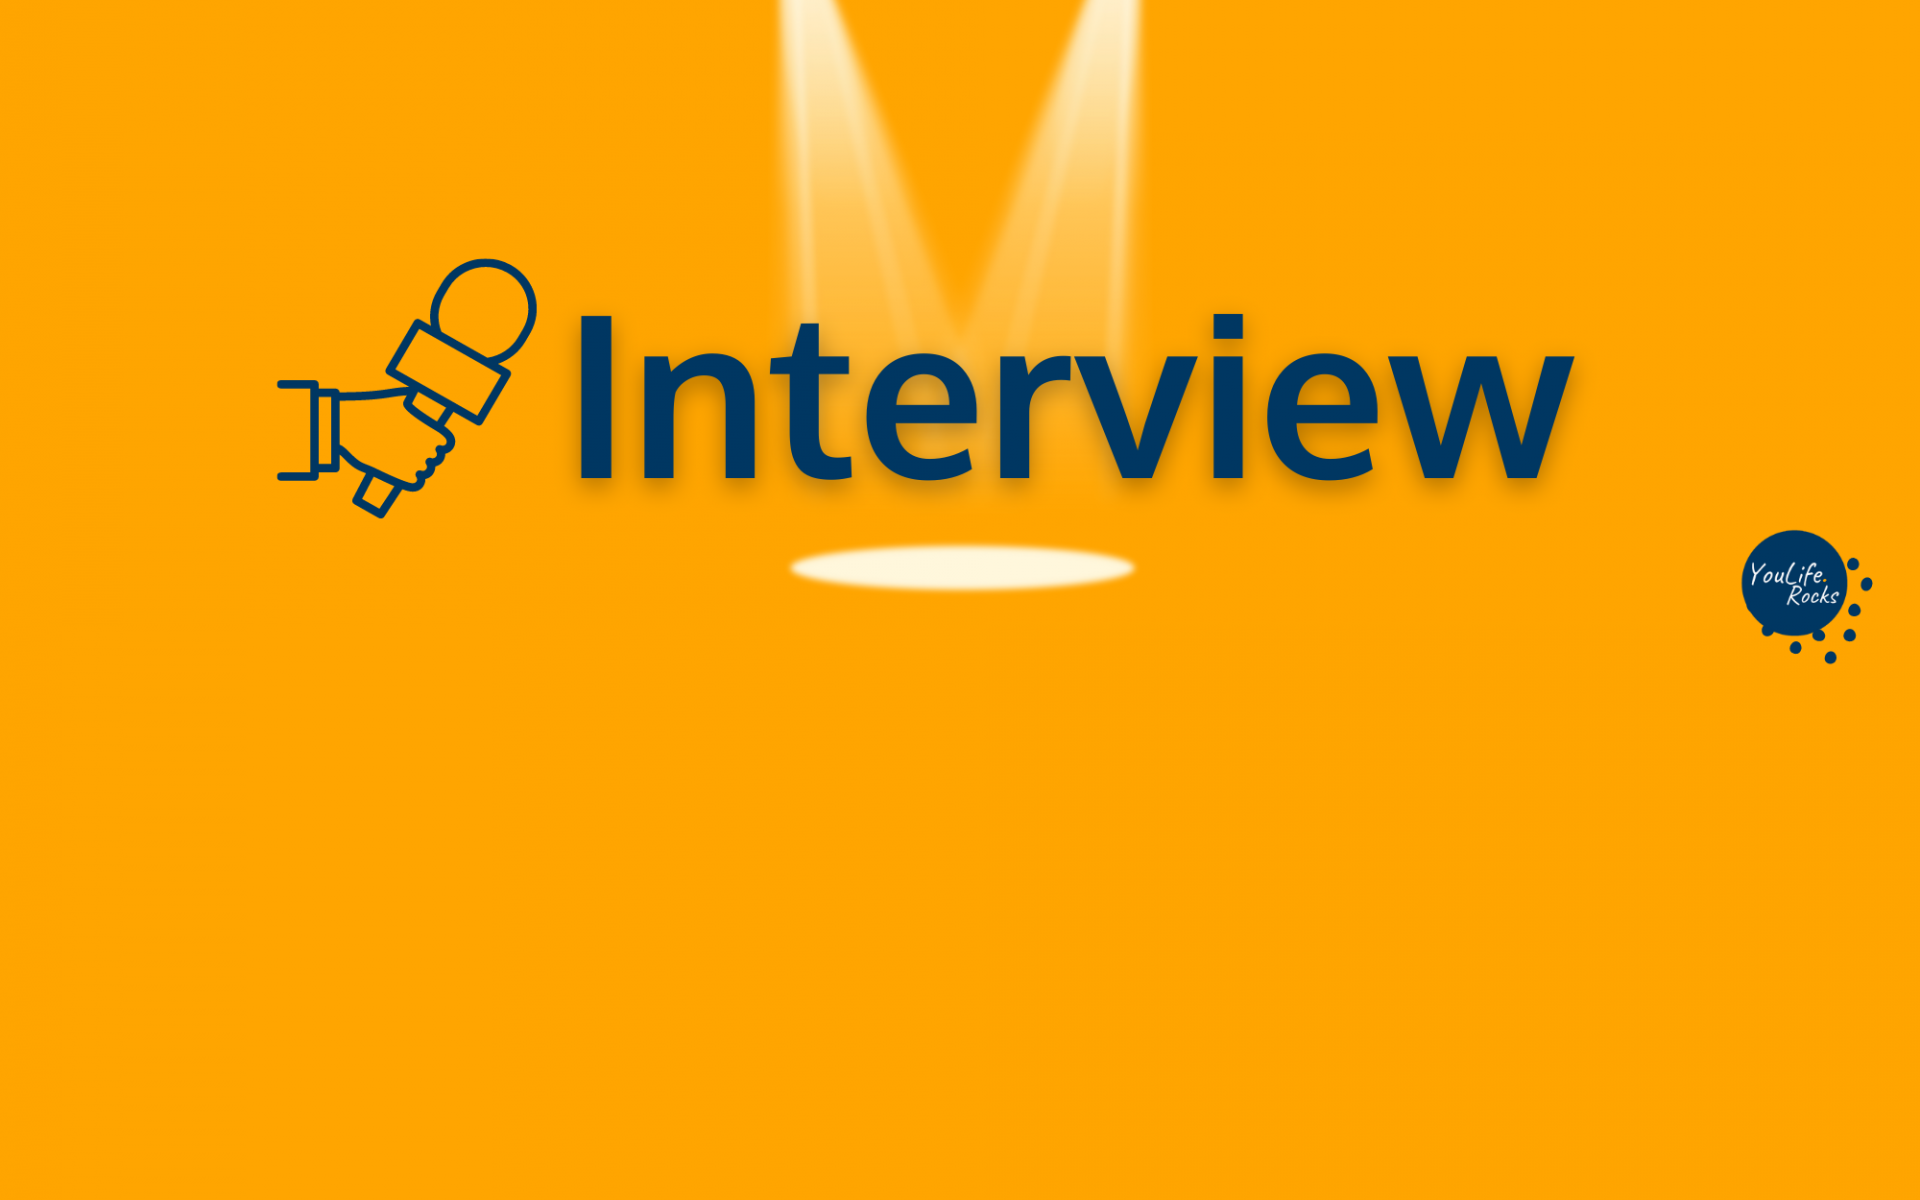 Schriftzug "Interview" in blauer Farbe, der Hintergrund ist orange. Der Schriftzug hat einen Schlagschatten und wird von oben von einem Spot angestrahlt. Links ist eine gezeichnete hand die ein Mikrofon hinstreckt.